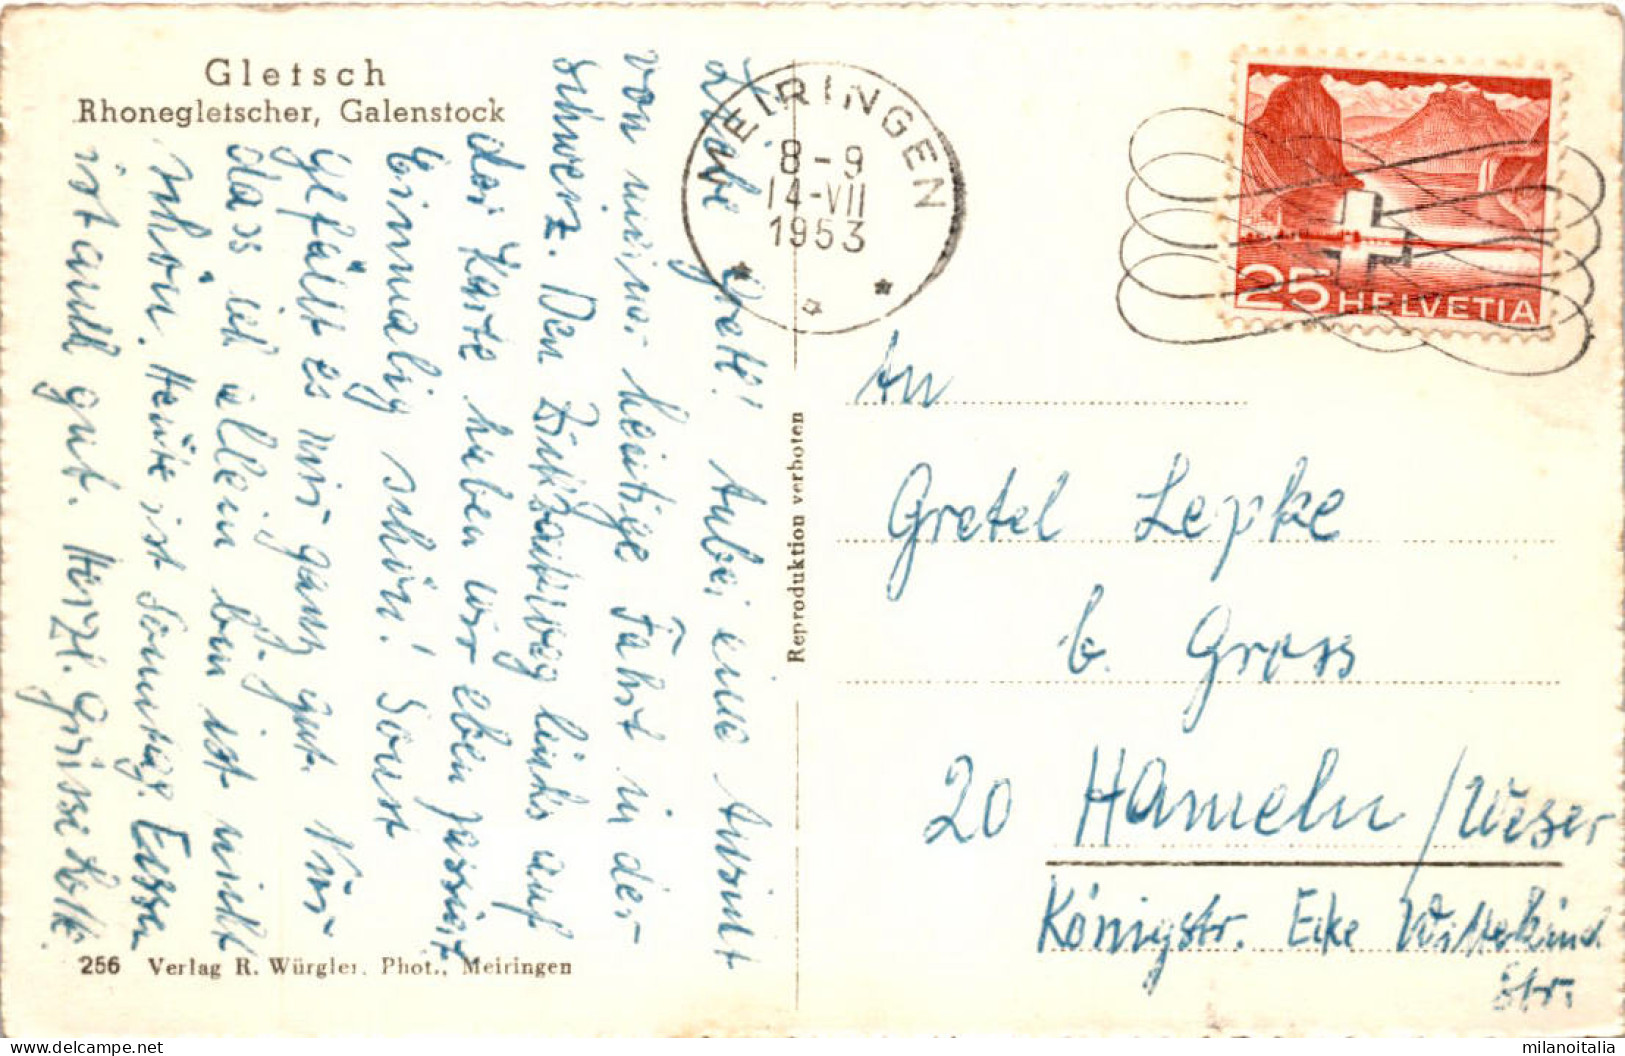 Gletsch - Rhonegletscher, Galenstock (256) * 14. 7. 1953 - Lens